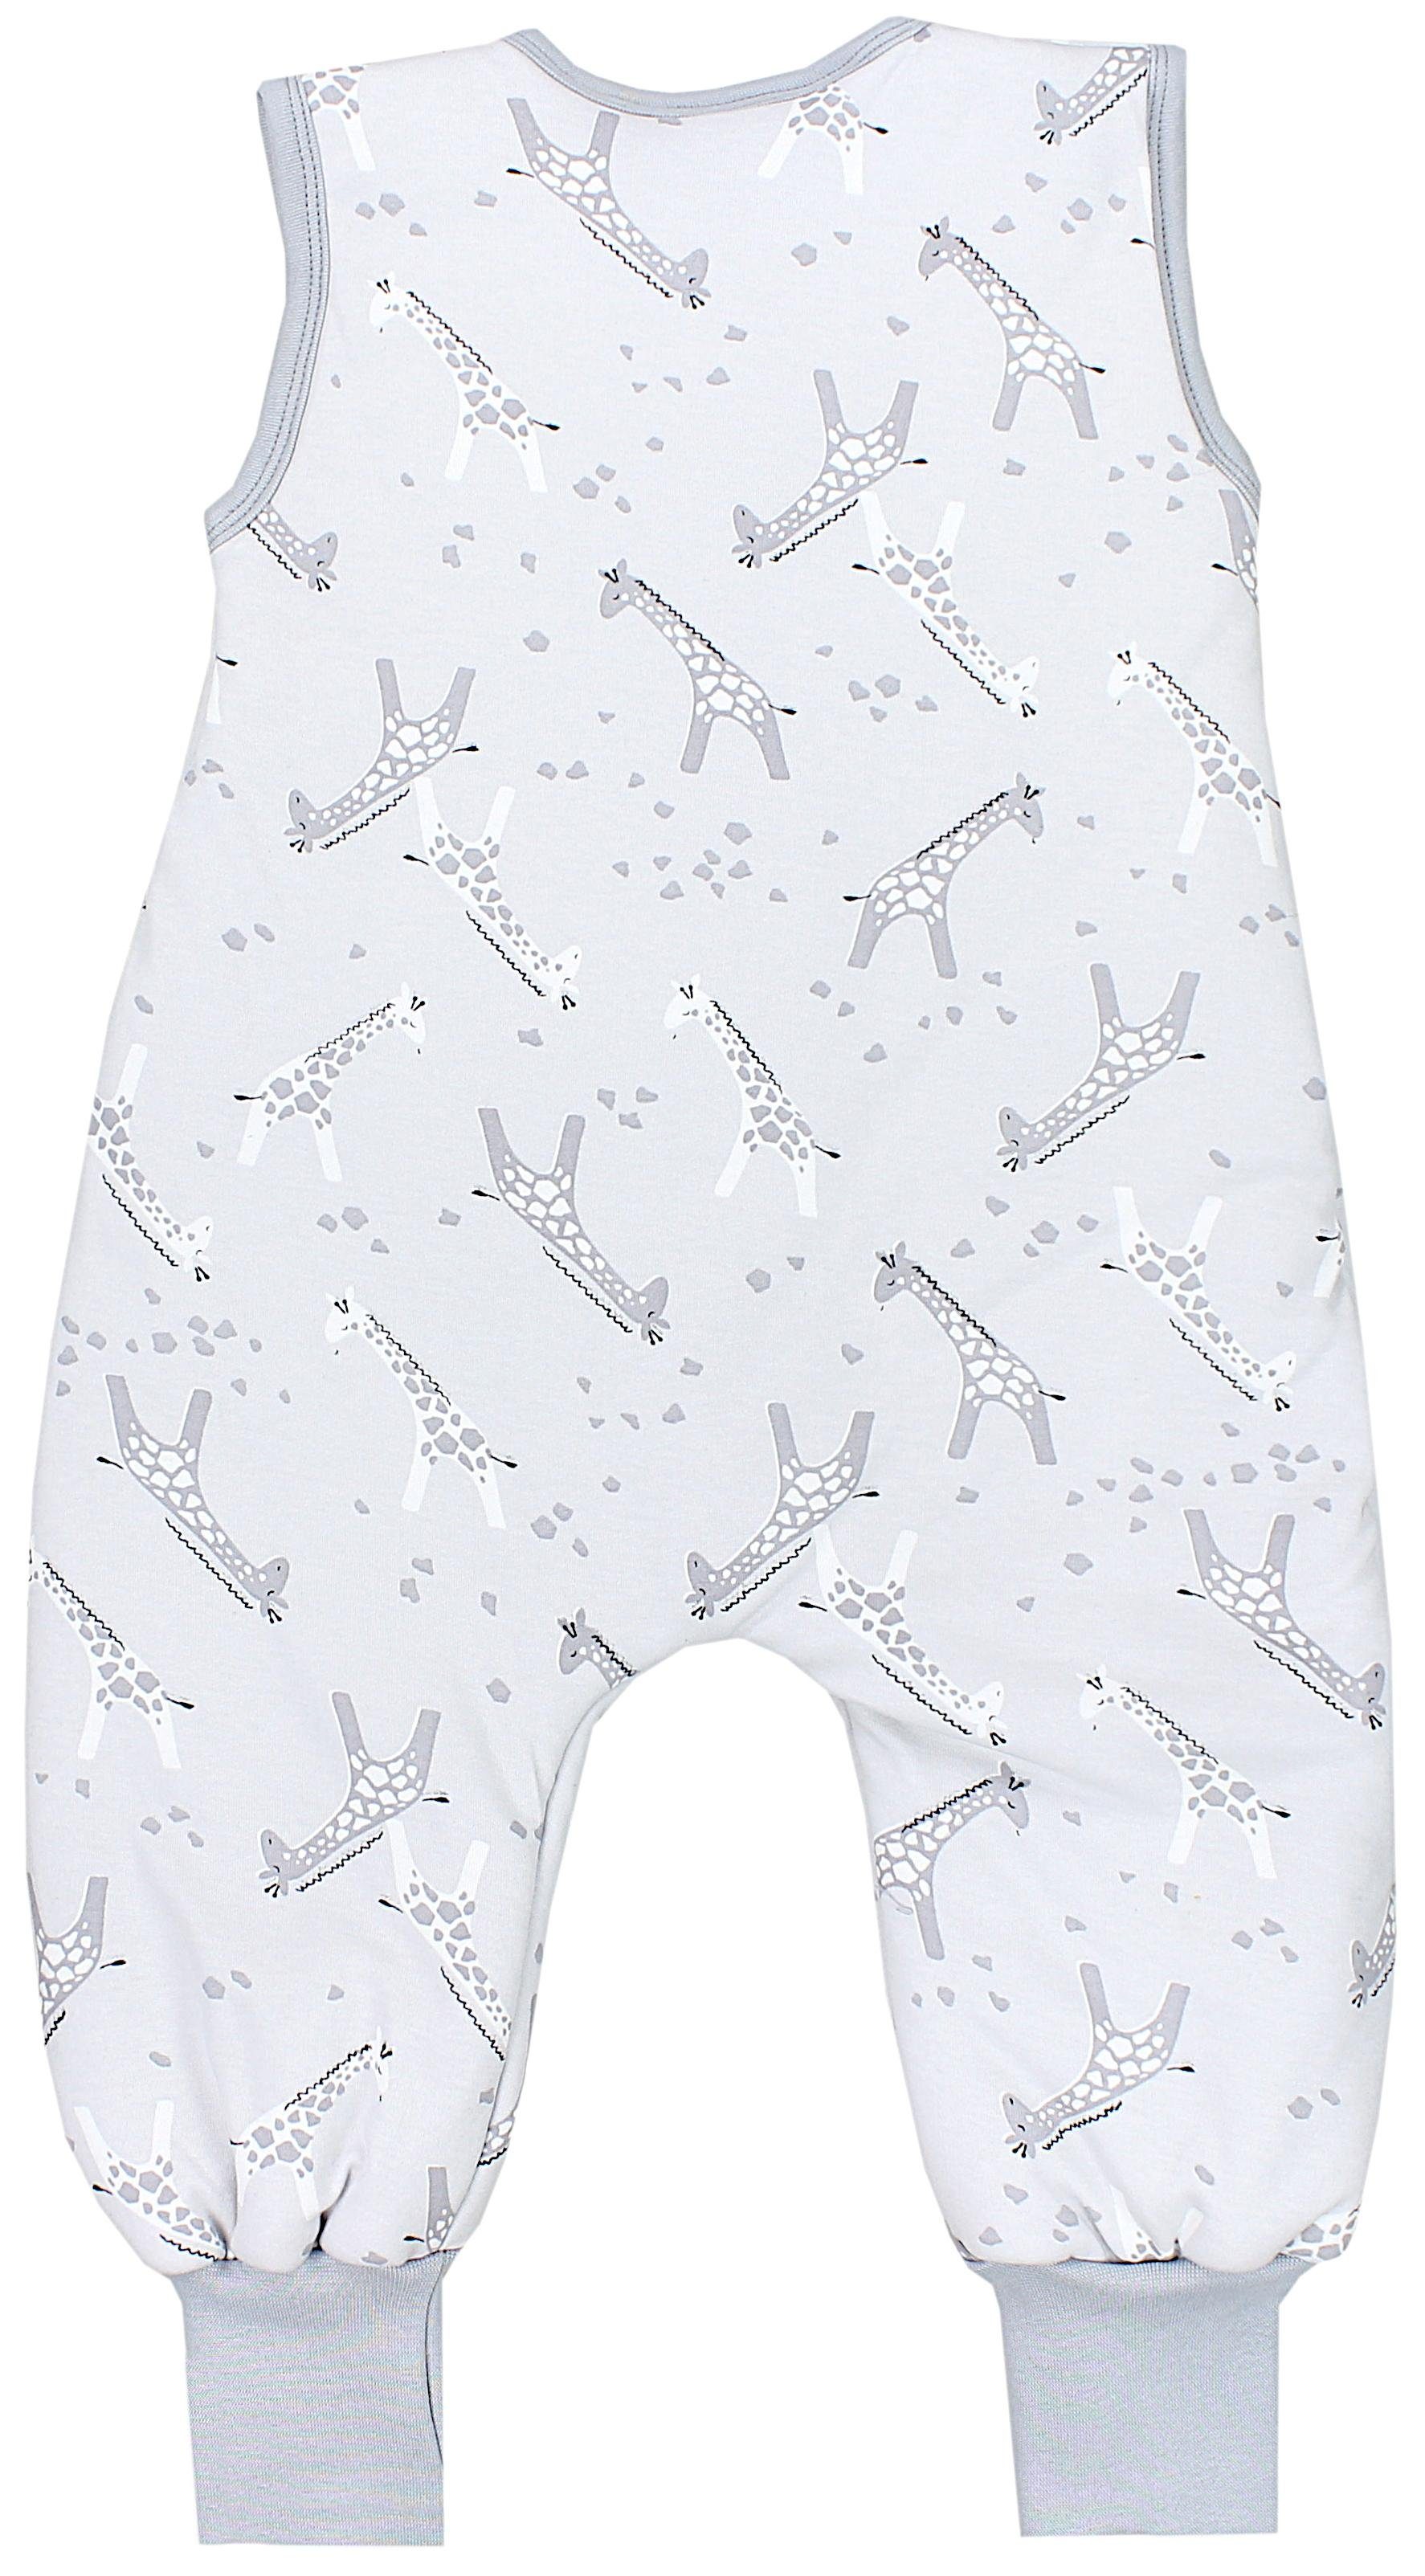 Unisex Babyschlafsack TupTam Winter Beinen Schlafsack Graue OEKO-TEX zertifiziert 2,5 TOG Giraffen mit Weiß